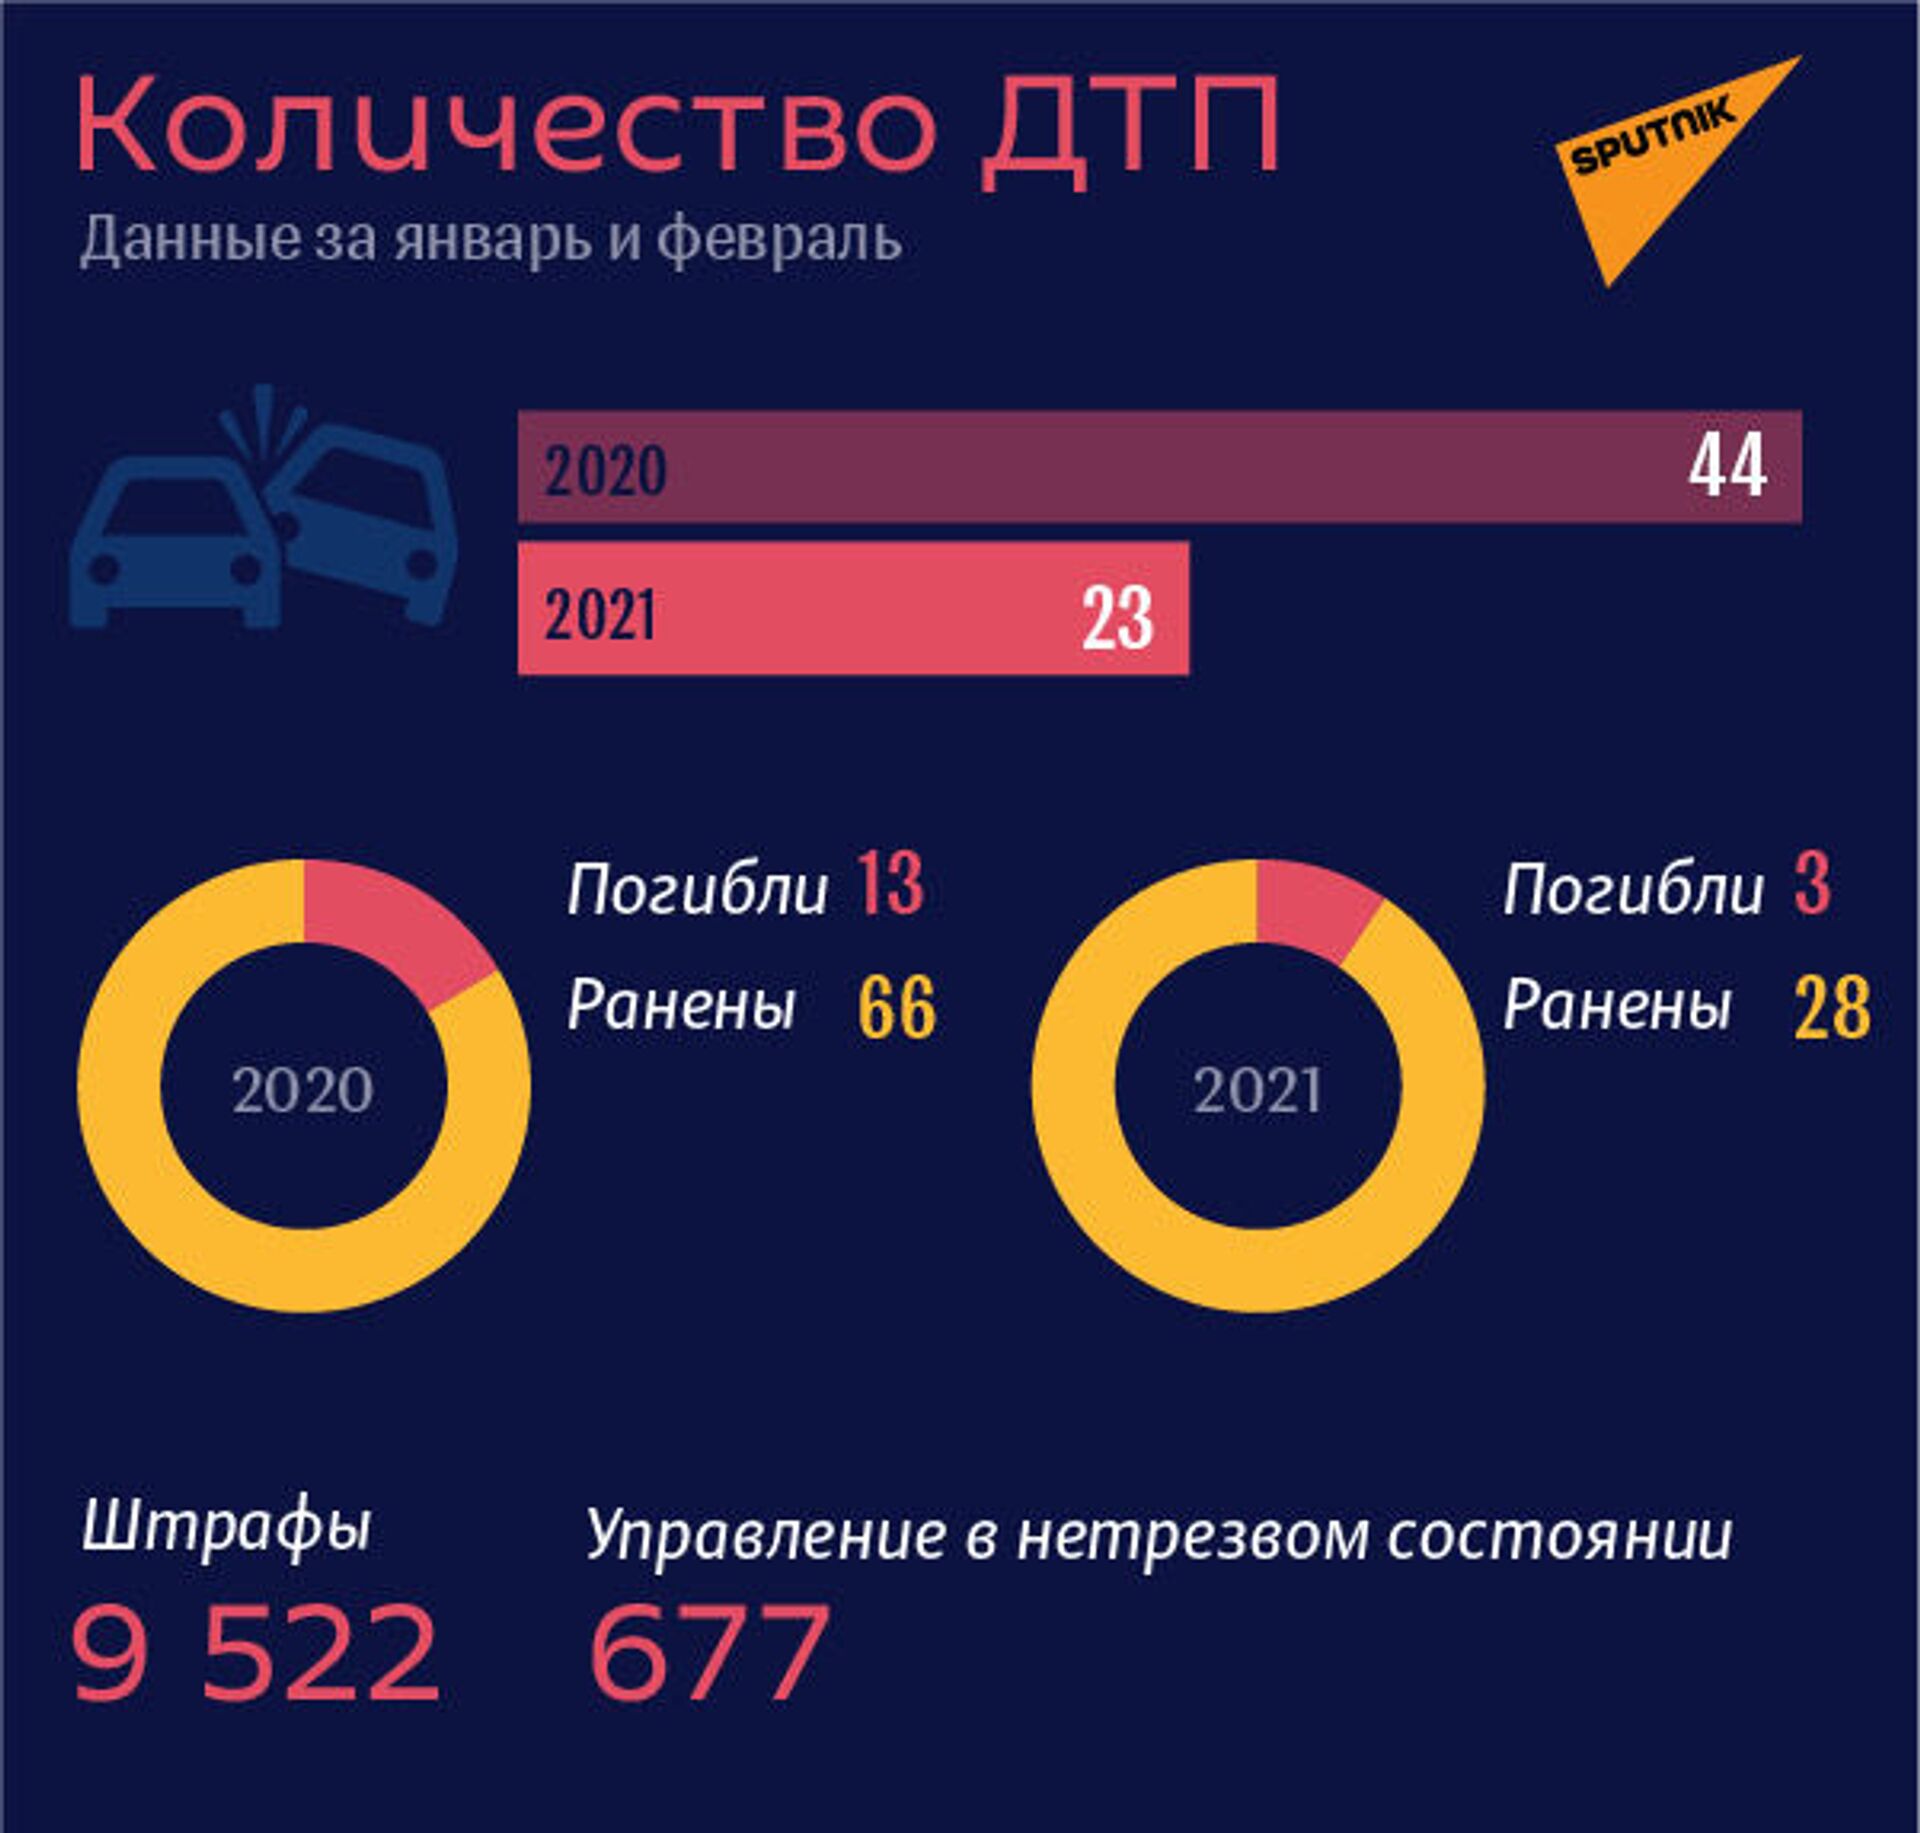 Положительный минус: число ДТП в Абхазии сократилось в два раза - Sputnik Абхазия, 1920, 18.03.2021